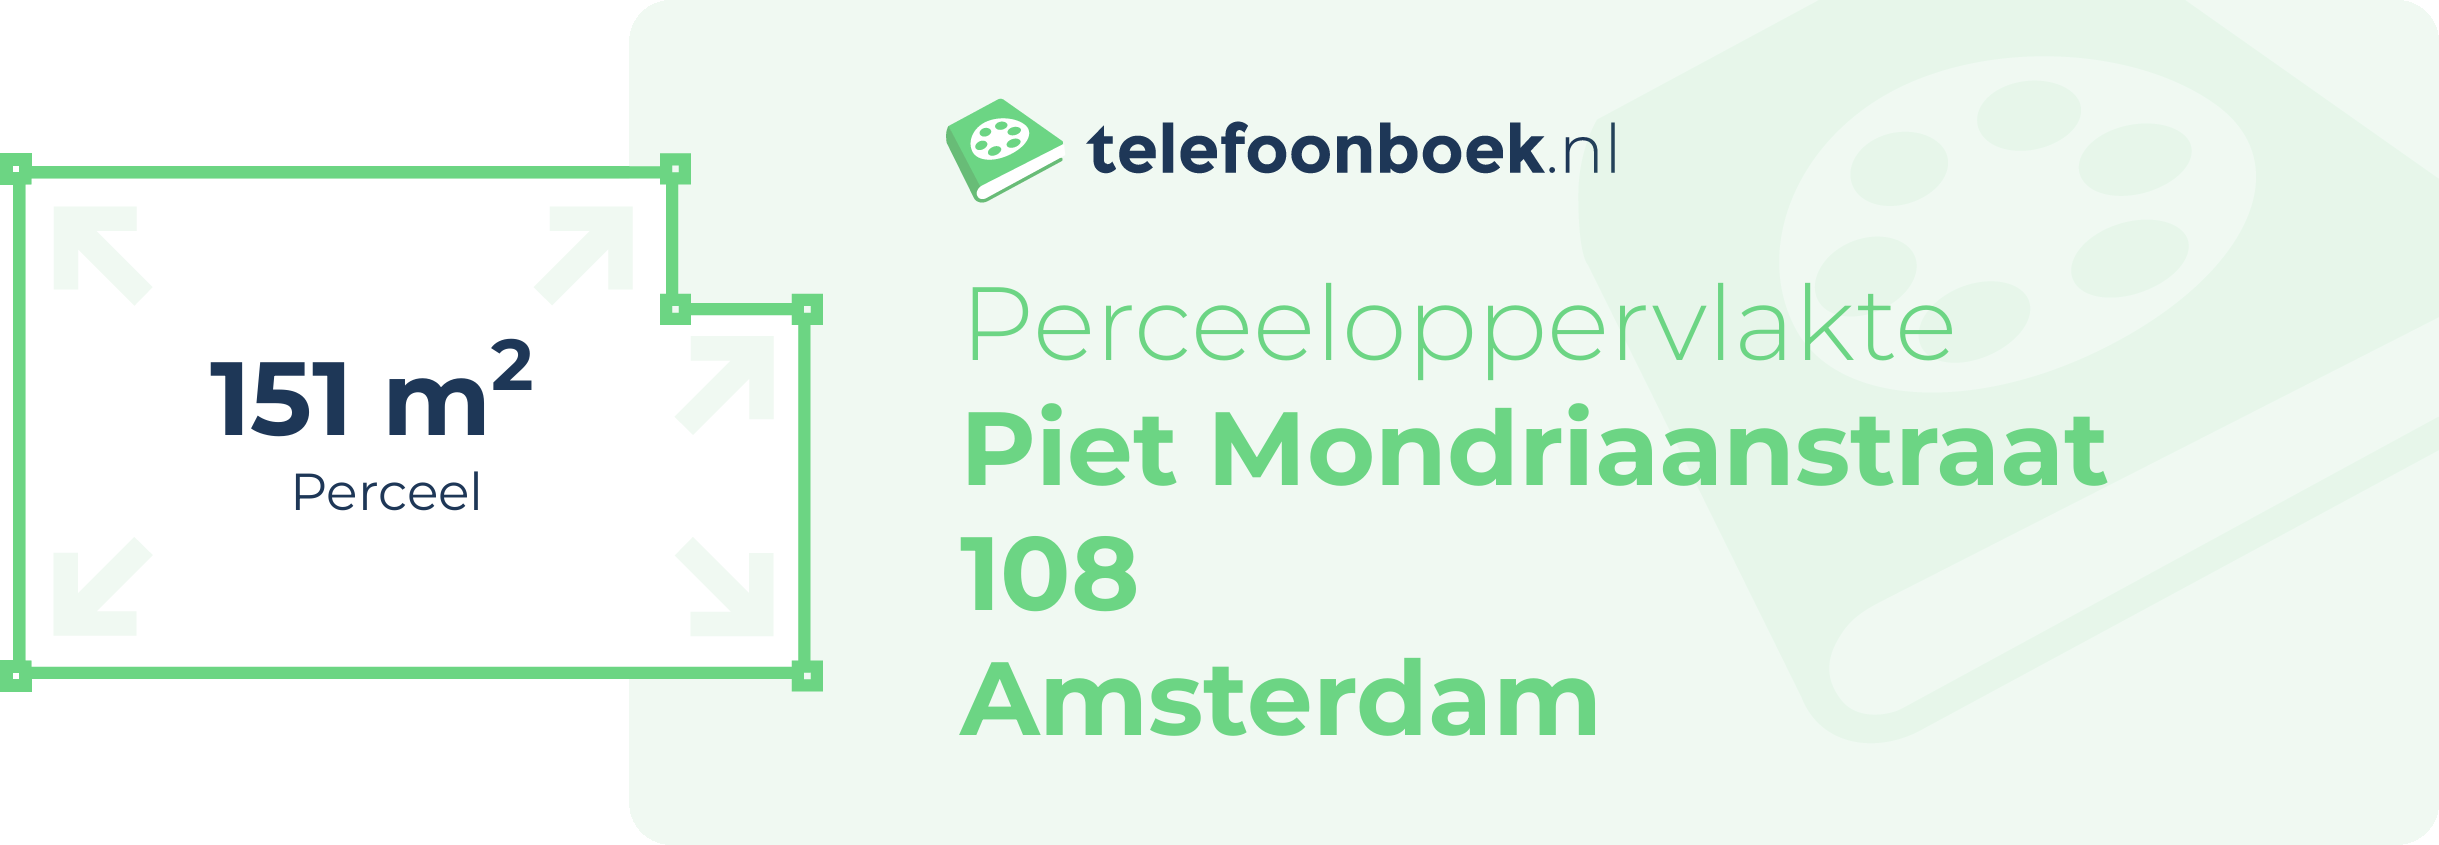 Perceeloppervlakte Piet Mondriaanstraat 108 Amsterdam